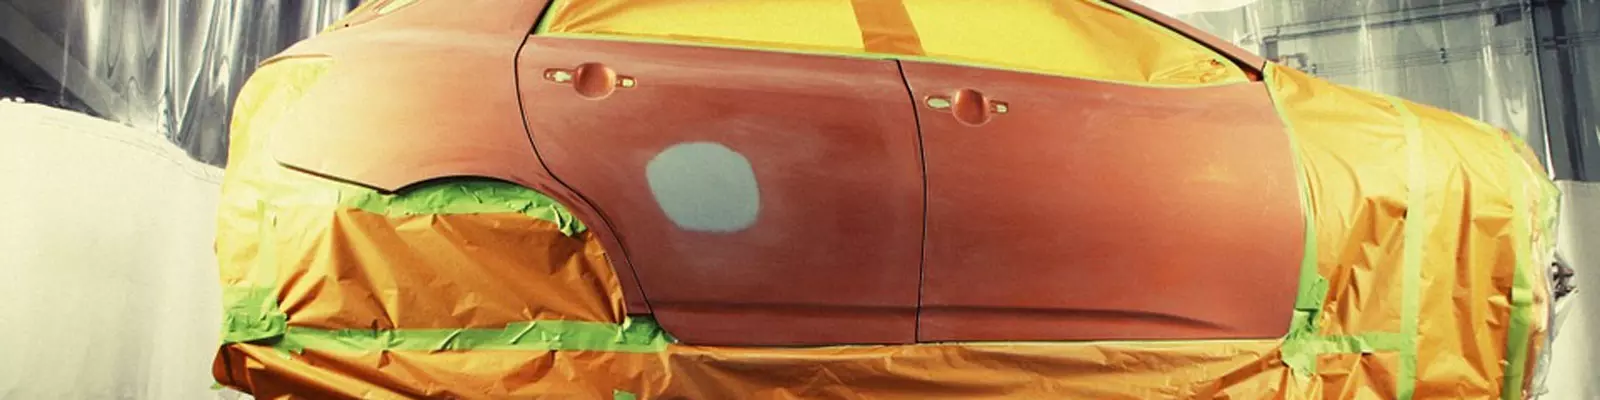 NM Cars - Verniciatura e lucidatura auto, foto della carrozzeria che viene verniciata di un colore diverso rispetto all'originale